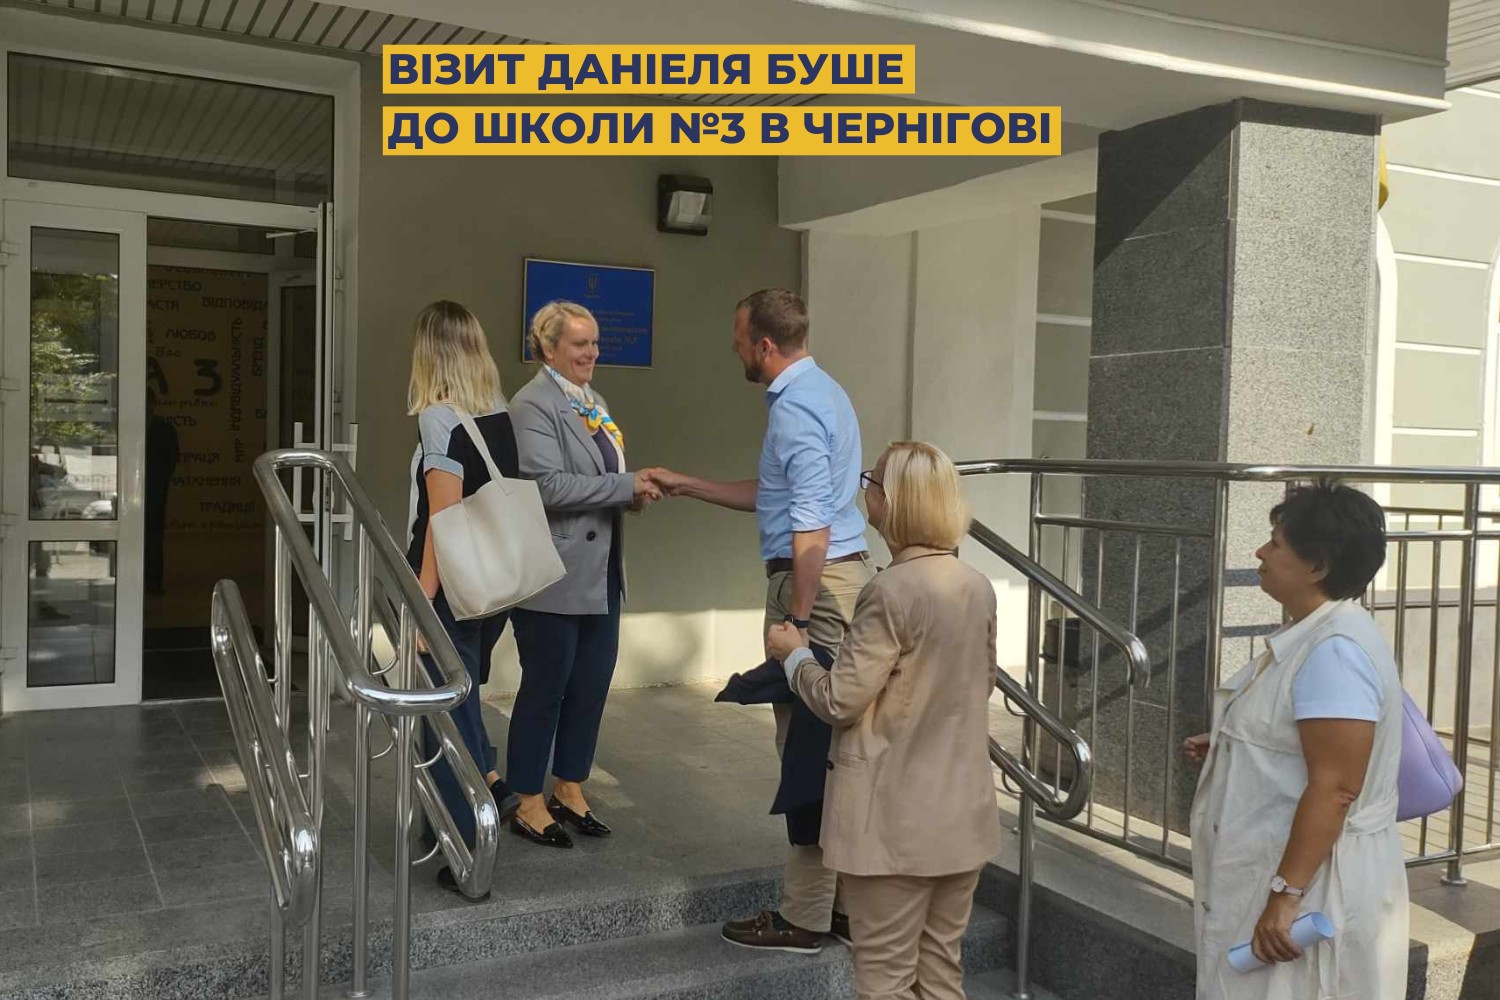 У вересні школу відвідав директор GIZ Ukraine Даніель Буше